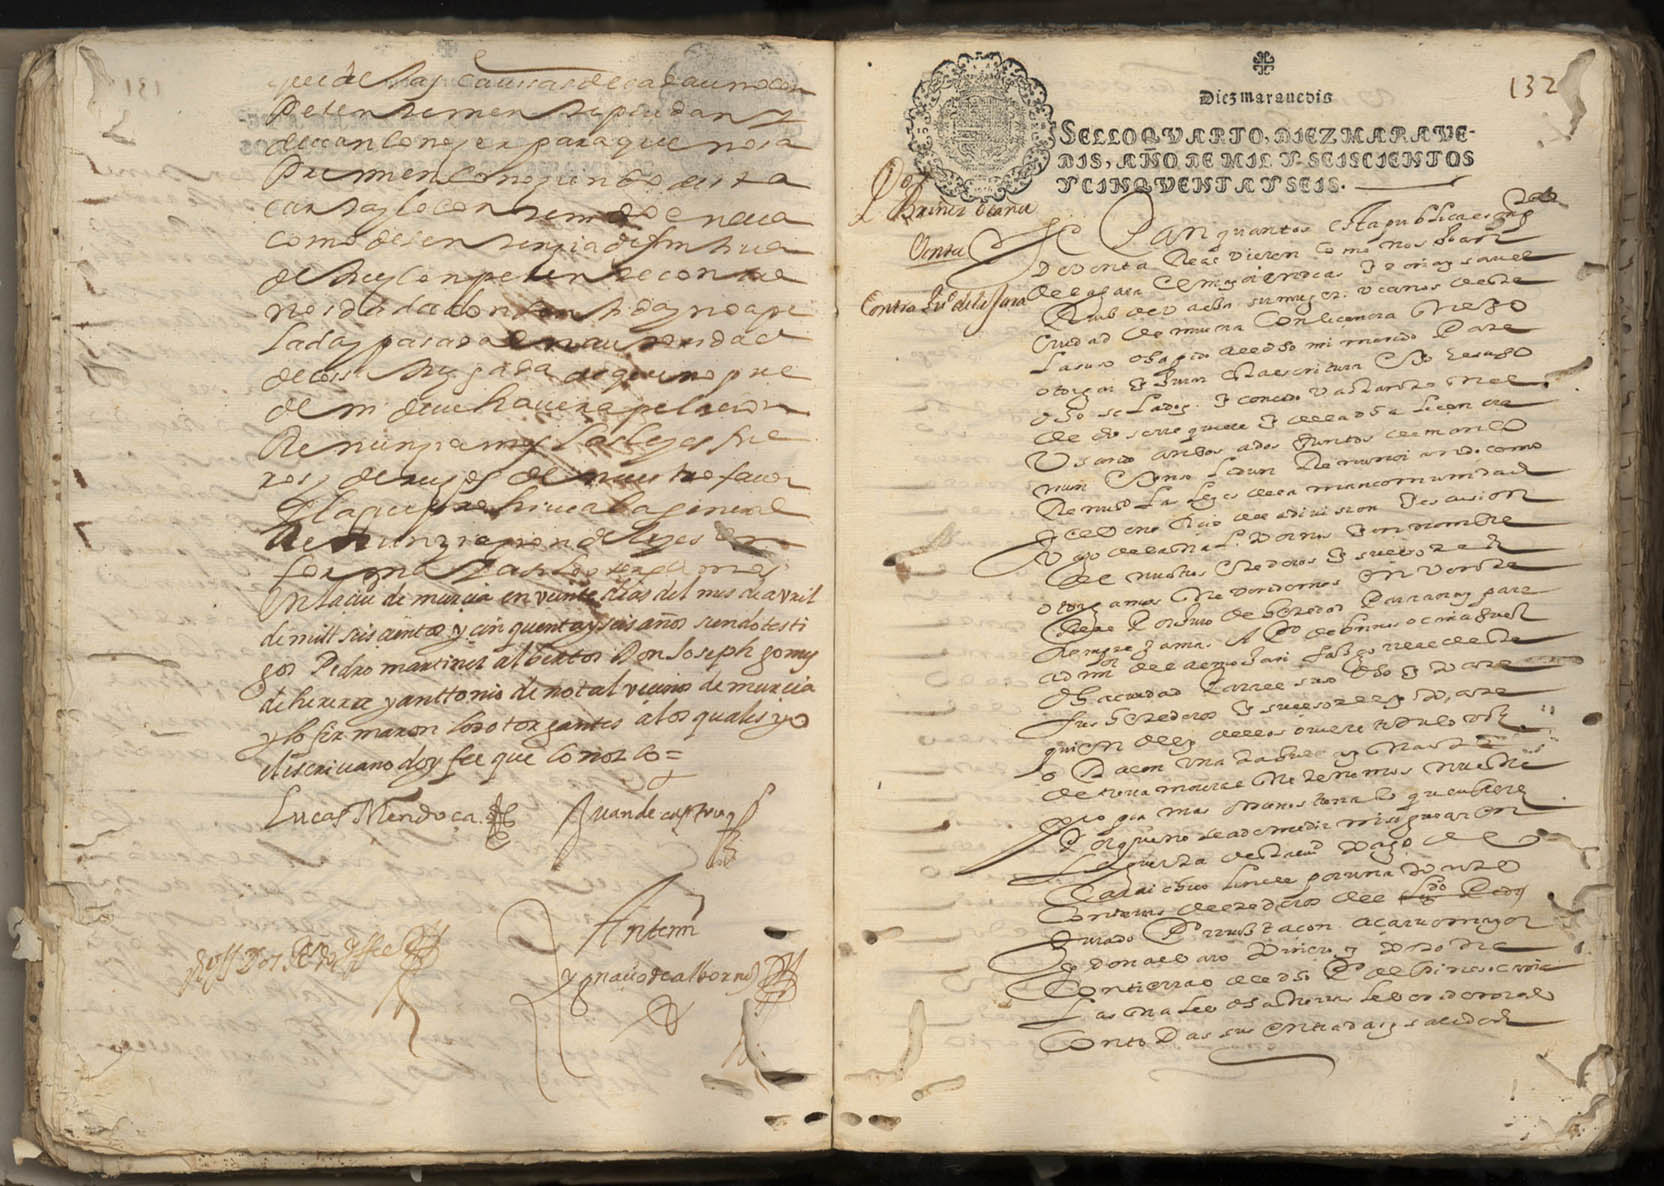 Registro de Ignacio de Albornoz y Velasco, Murcia de 1656-1657